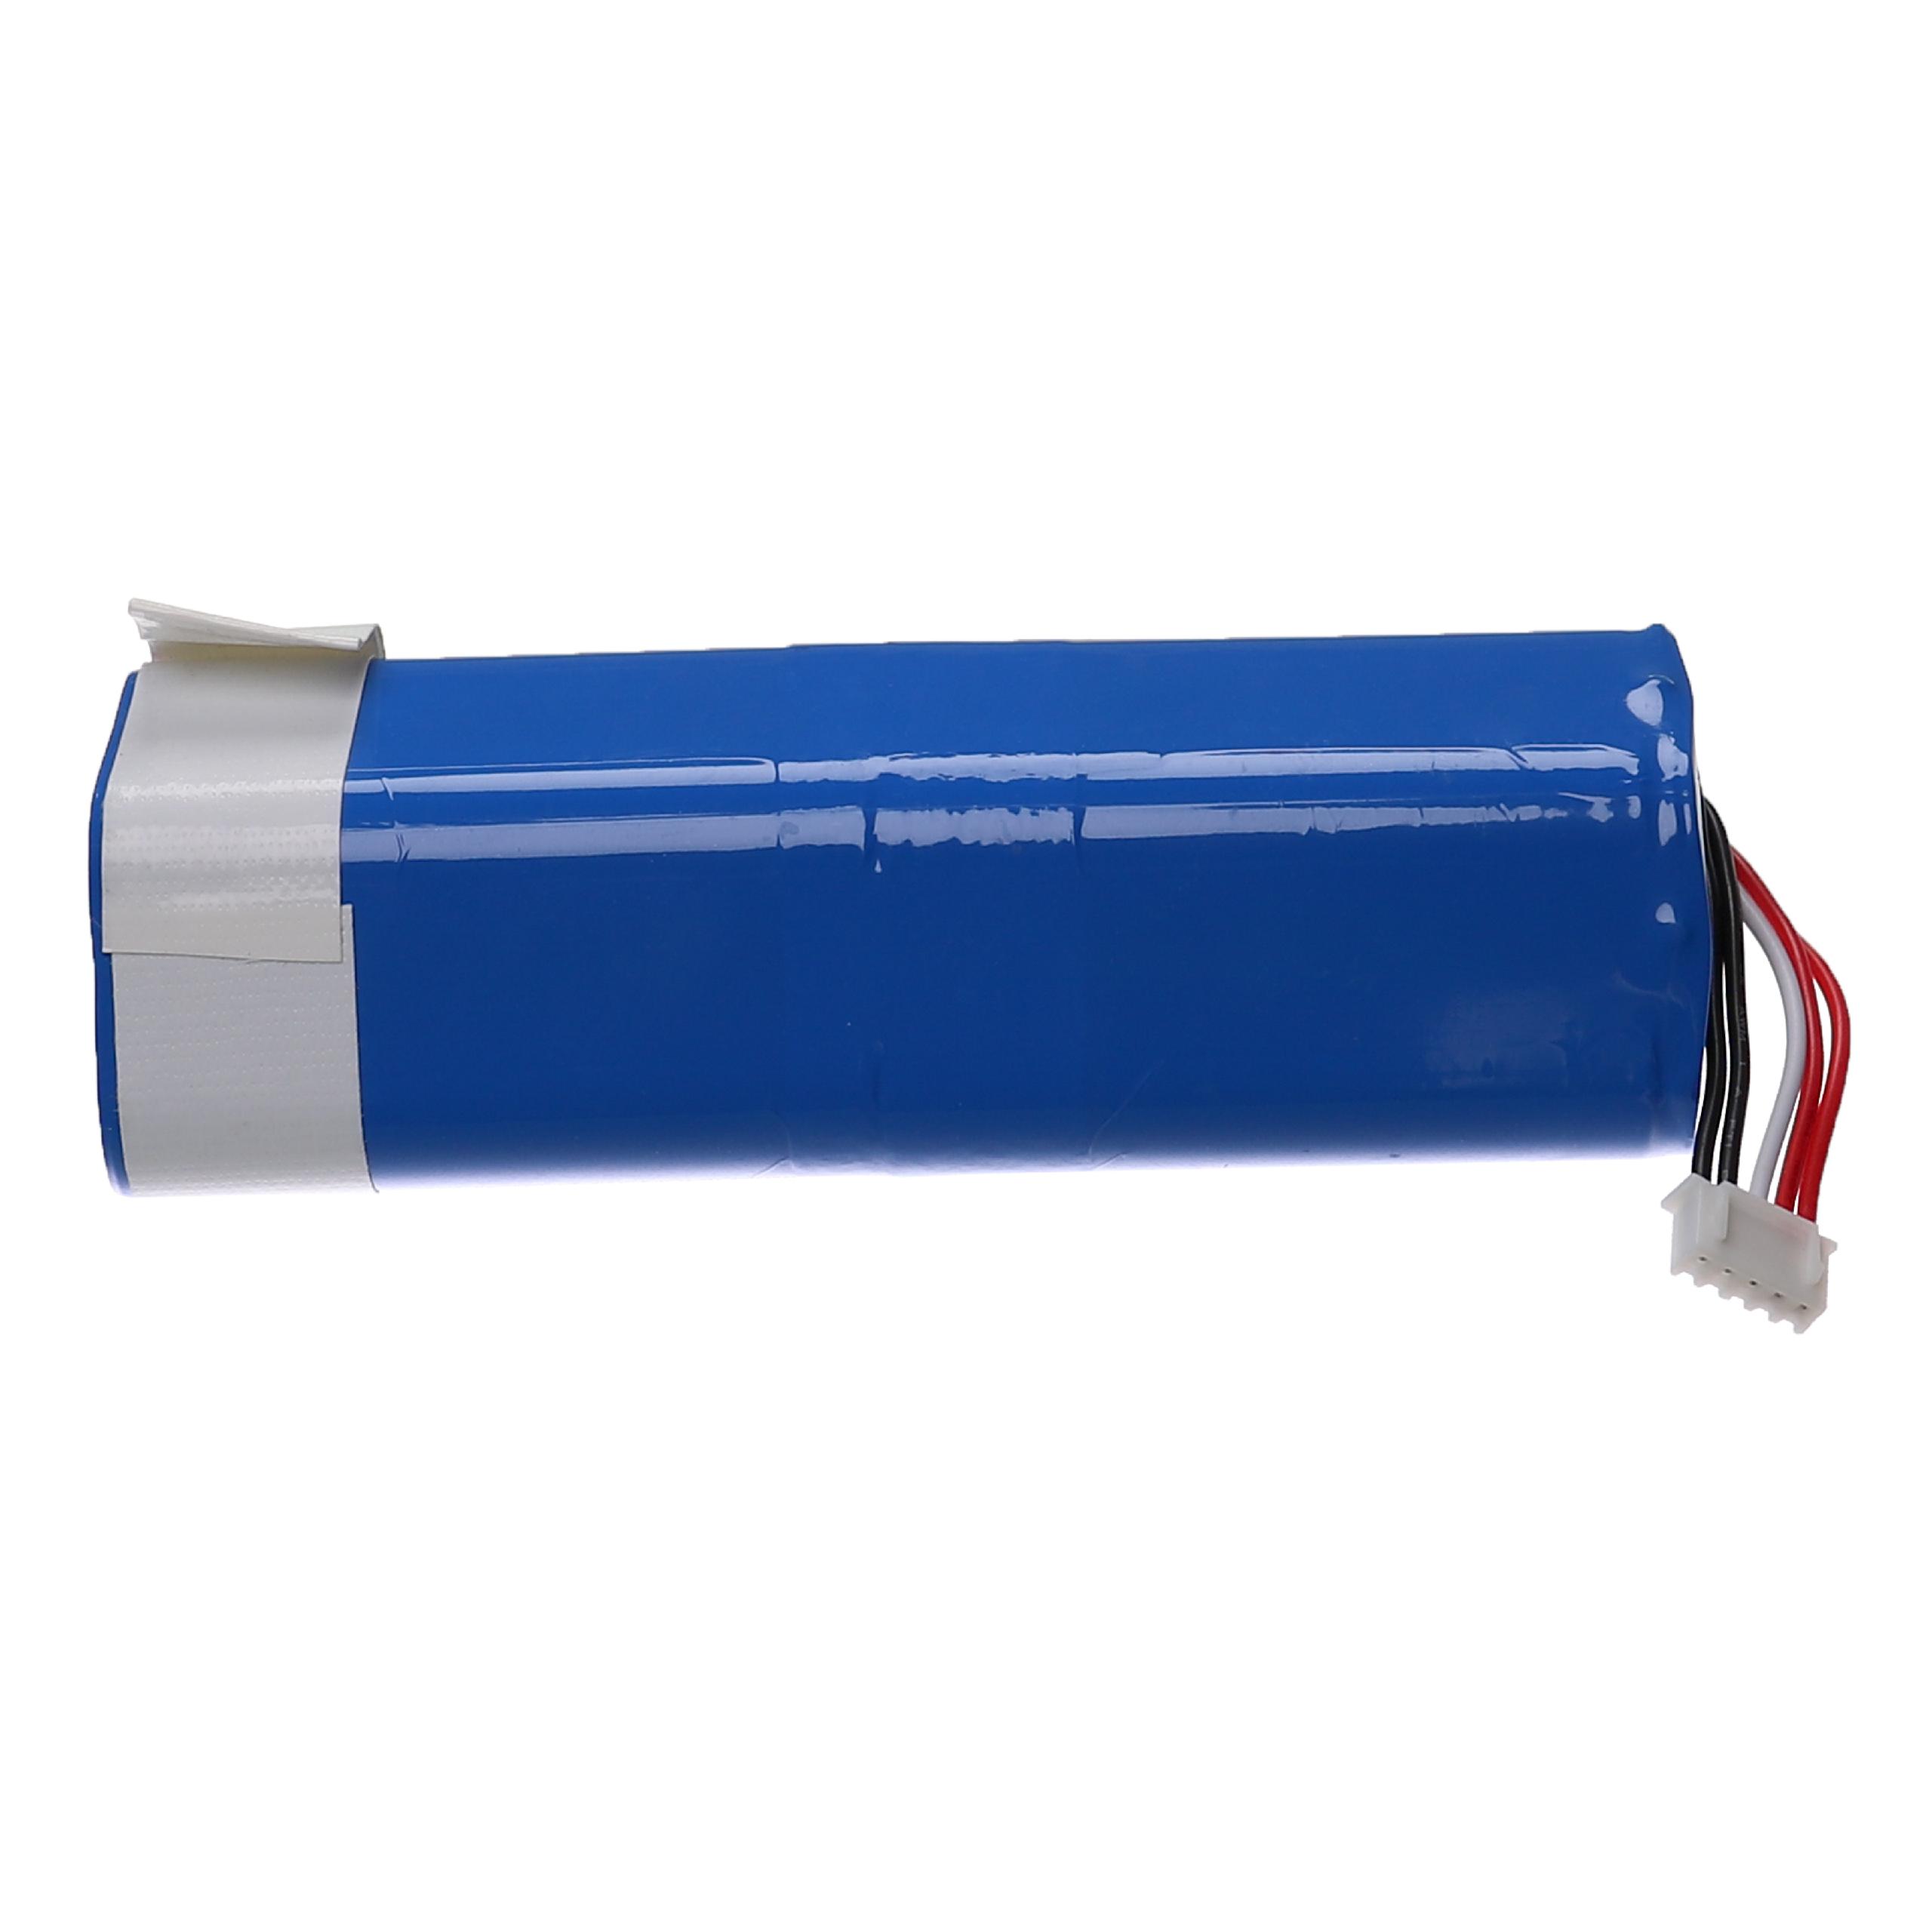 Batterie remplace Ecovacs 201-1913-4200, 201-1913-4201 pour robot aspirateur - 5200mAh 14,4V Li-ion, bleu